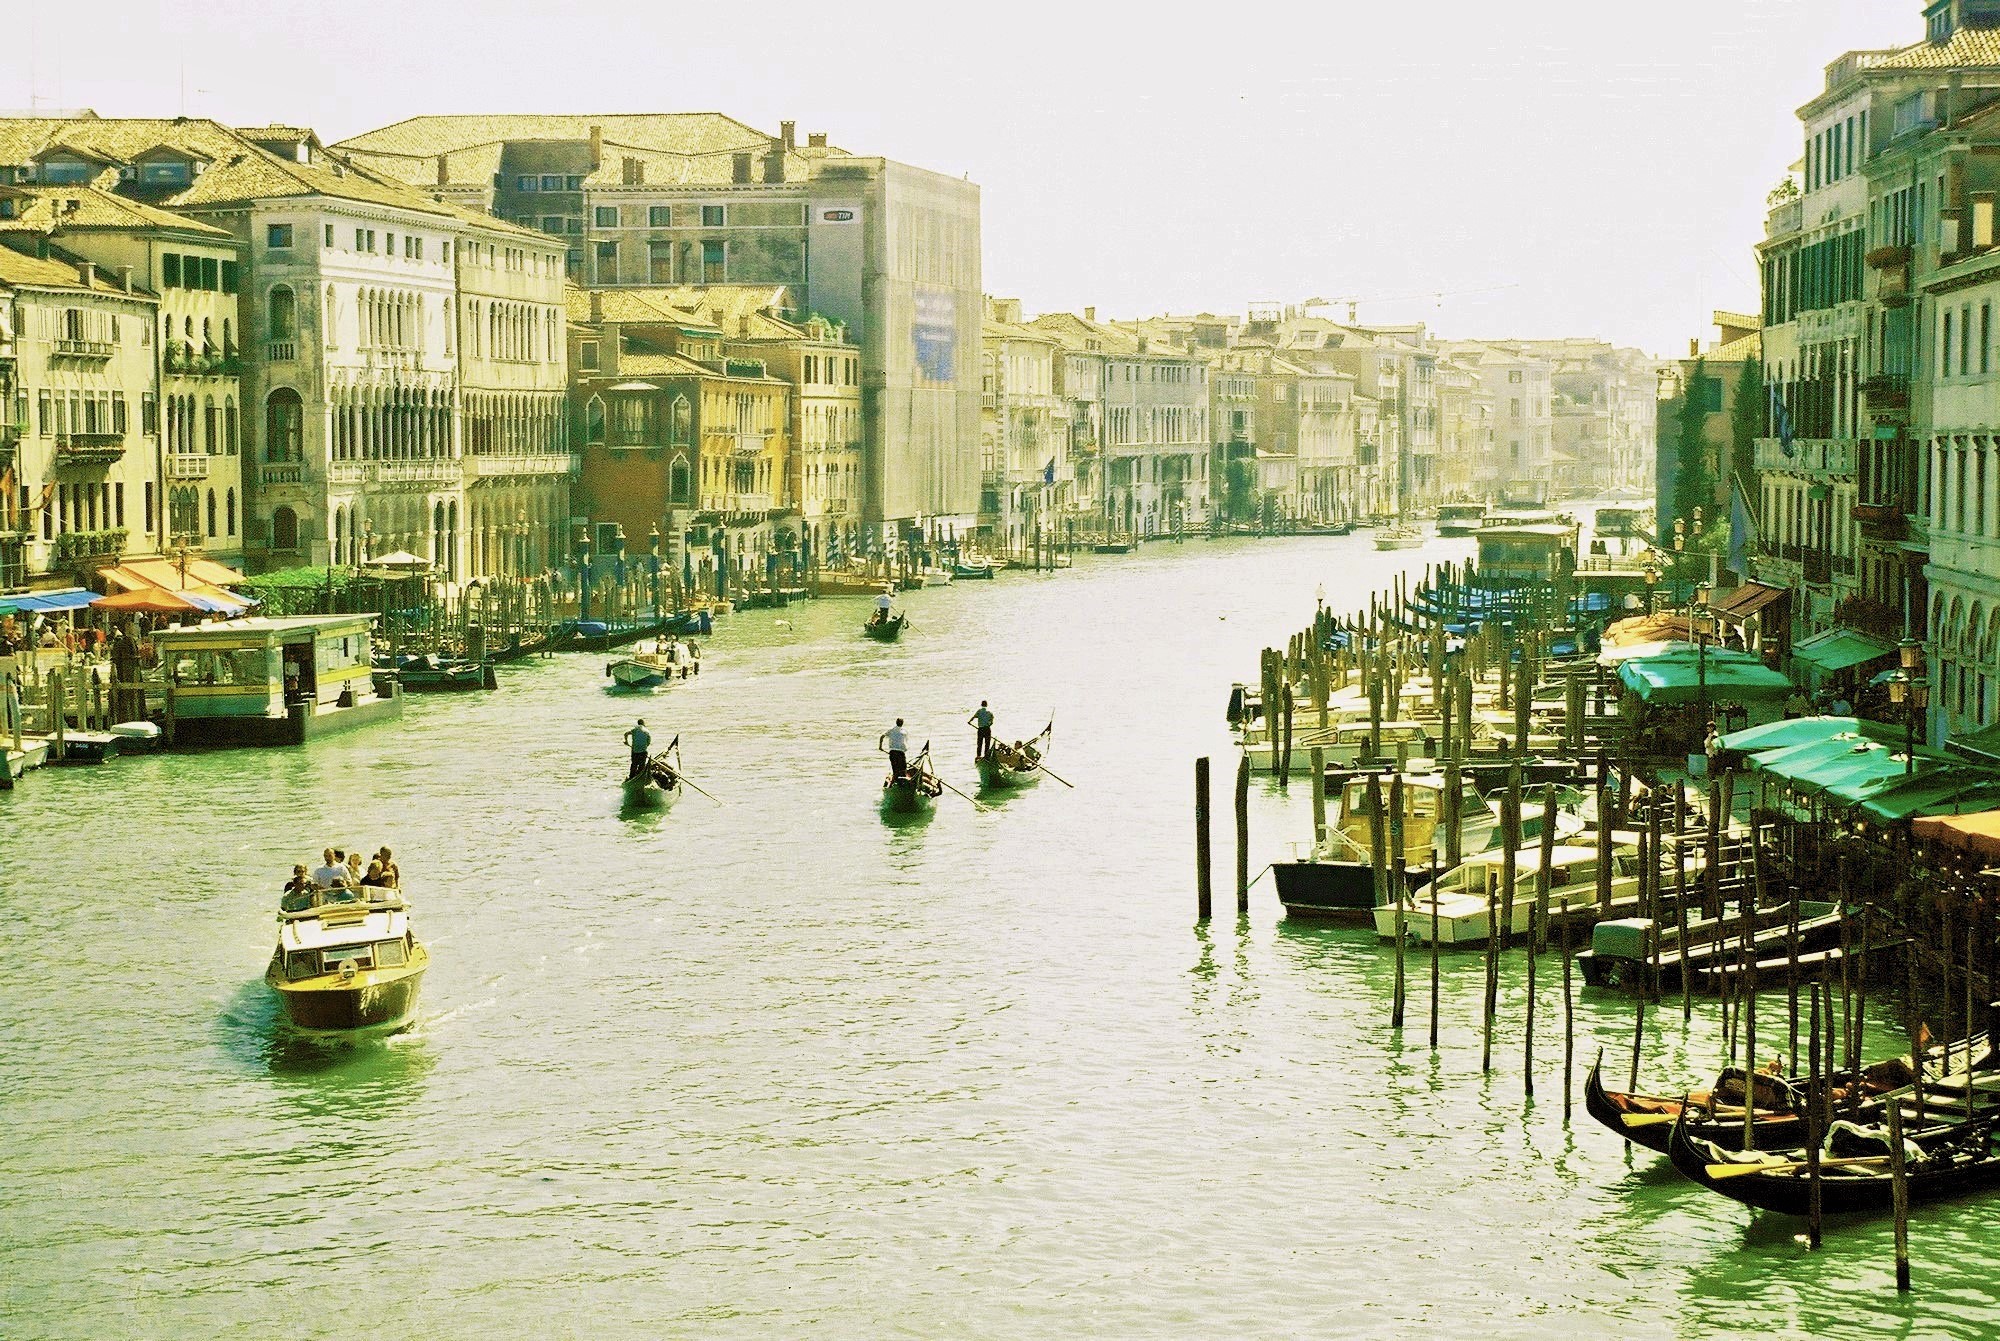 Venise thành phố nữ hoàng bên bờ Địa Trung Hải - 1